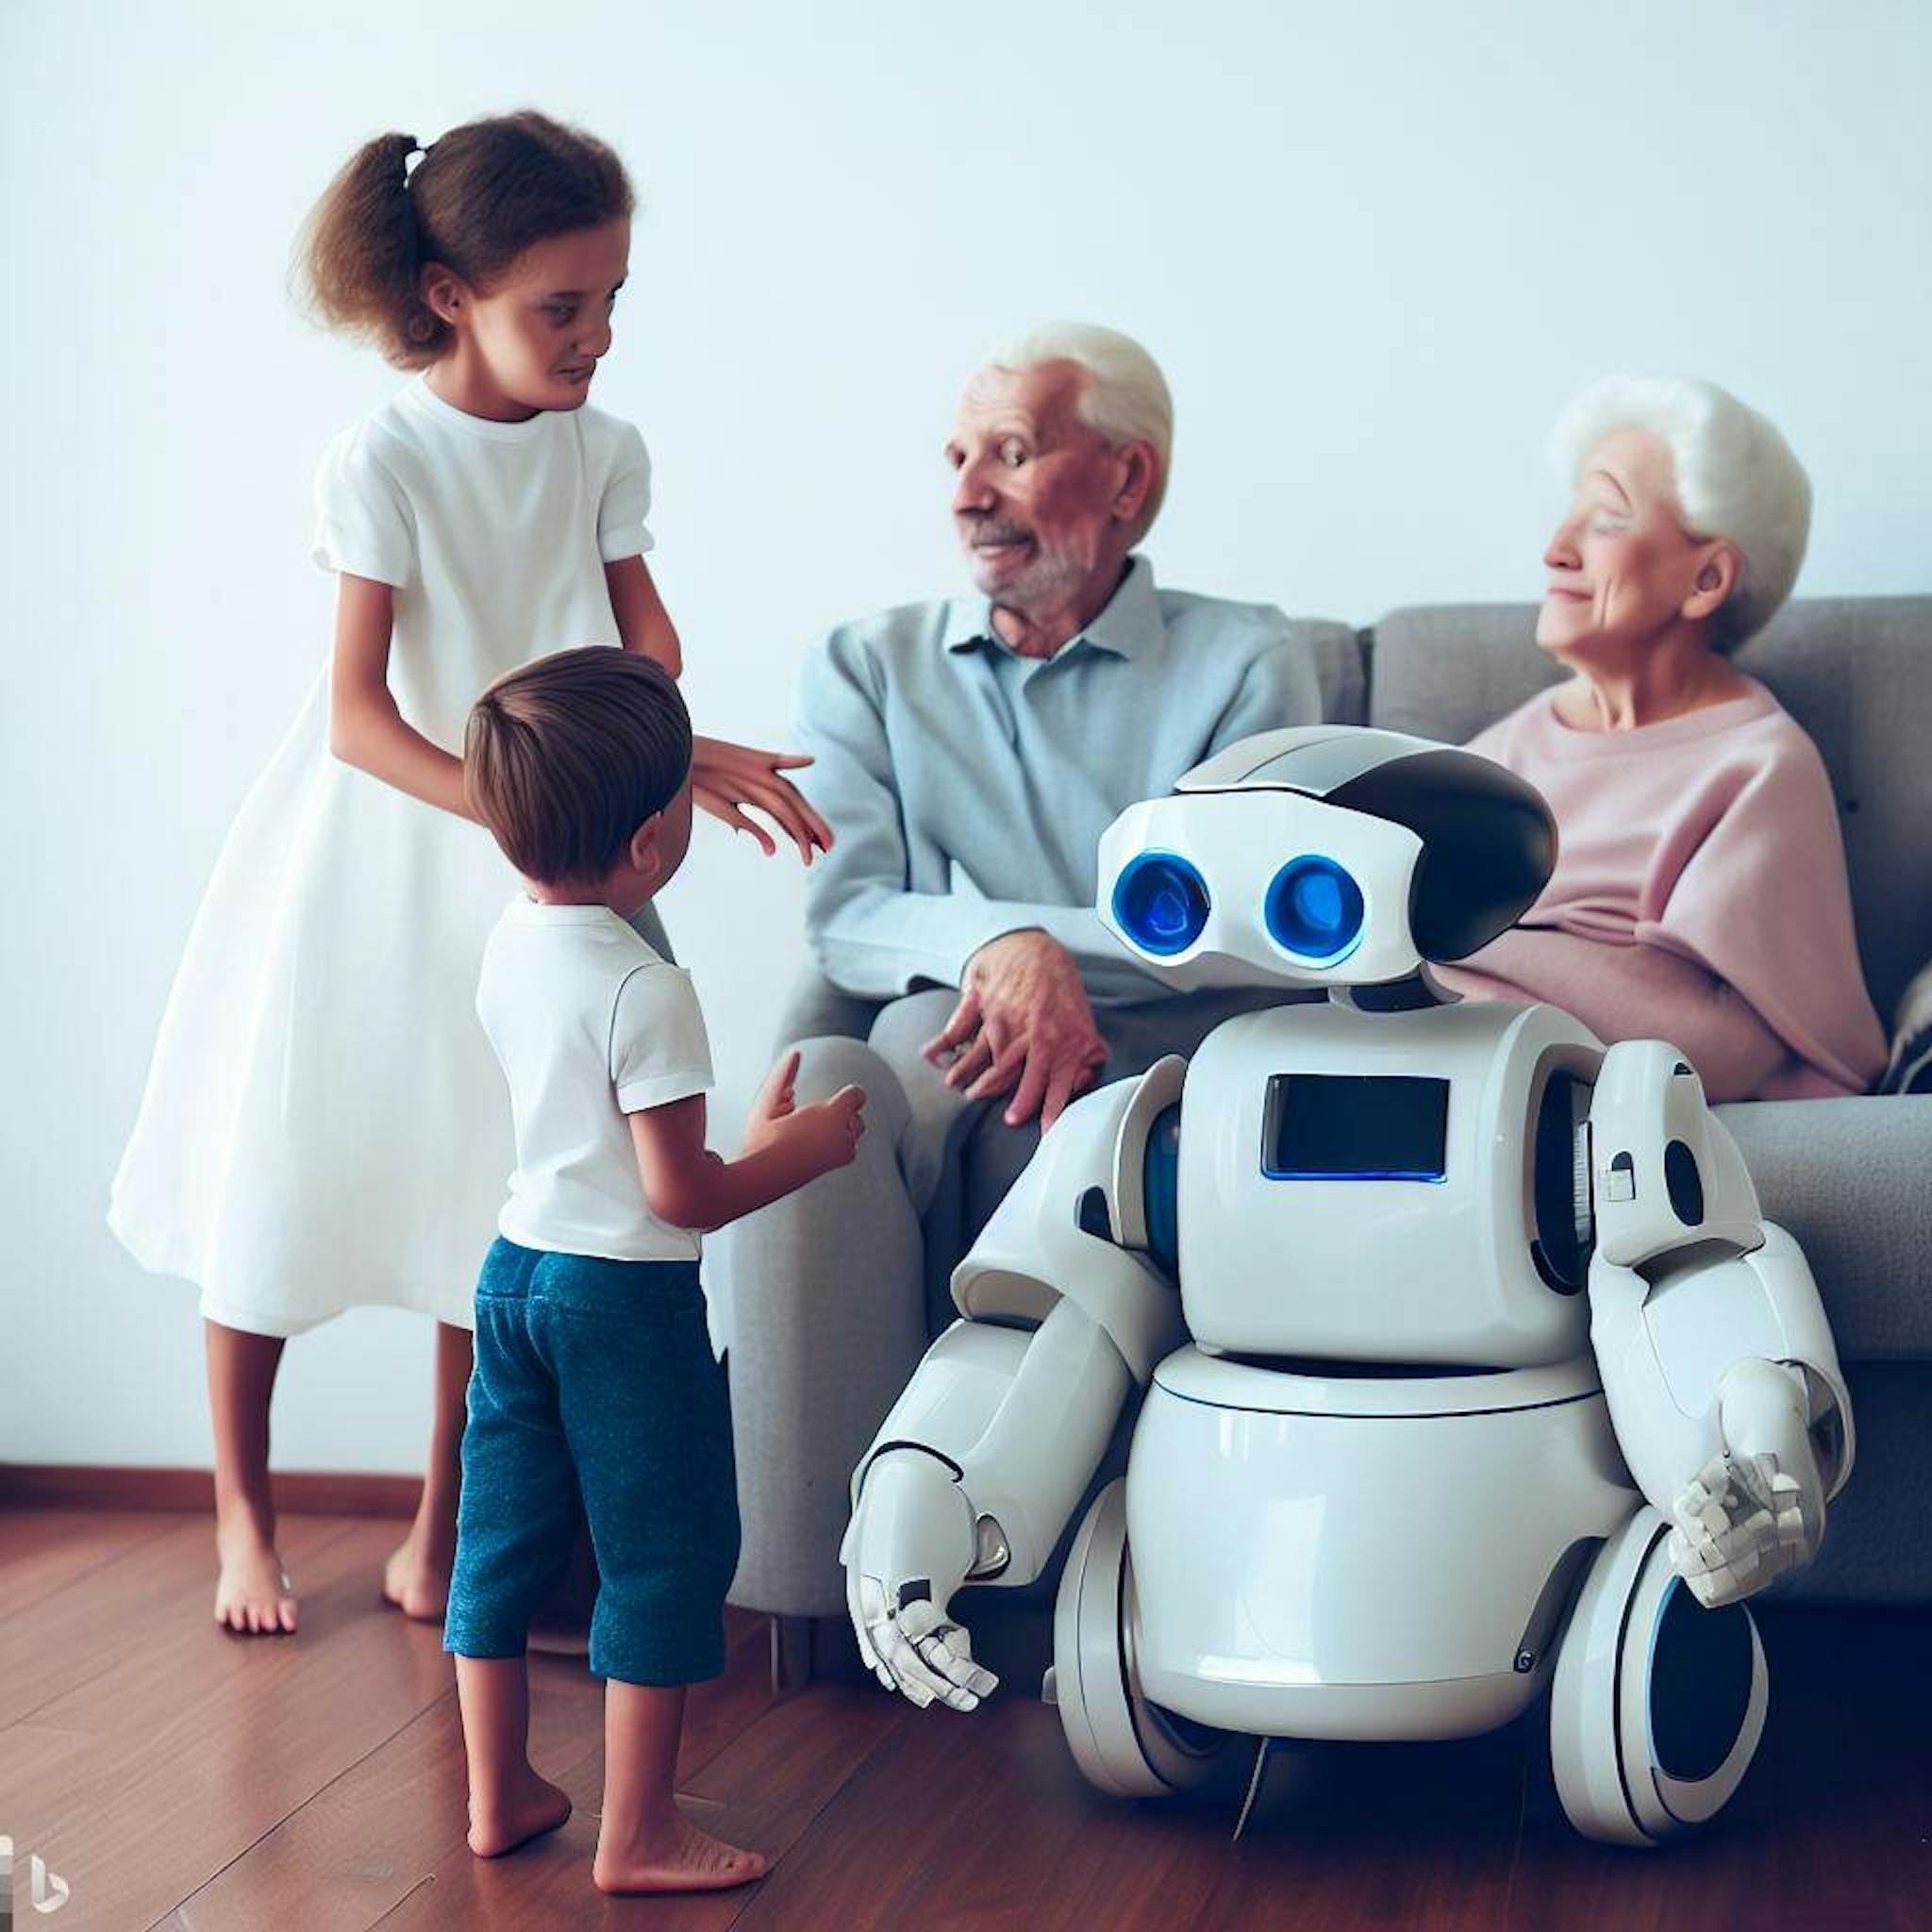 A Robot providing healthcare to the elderly